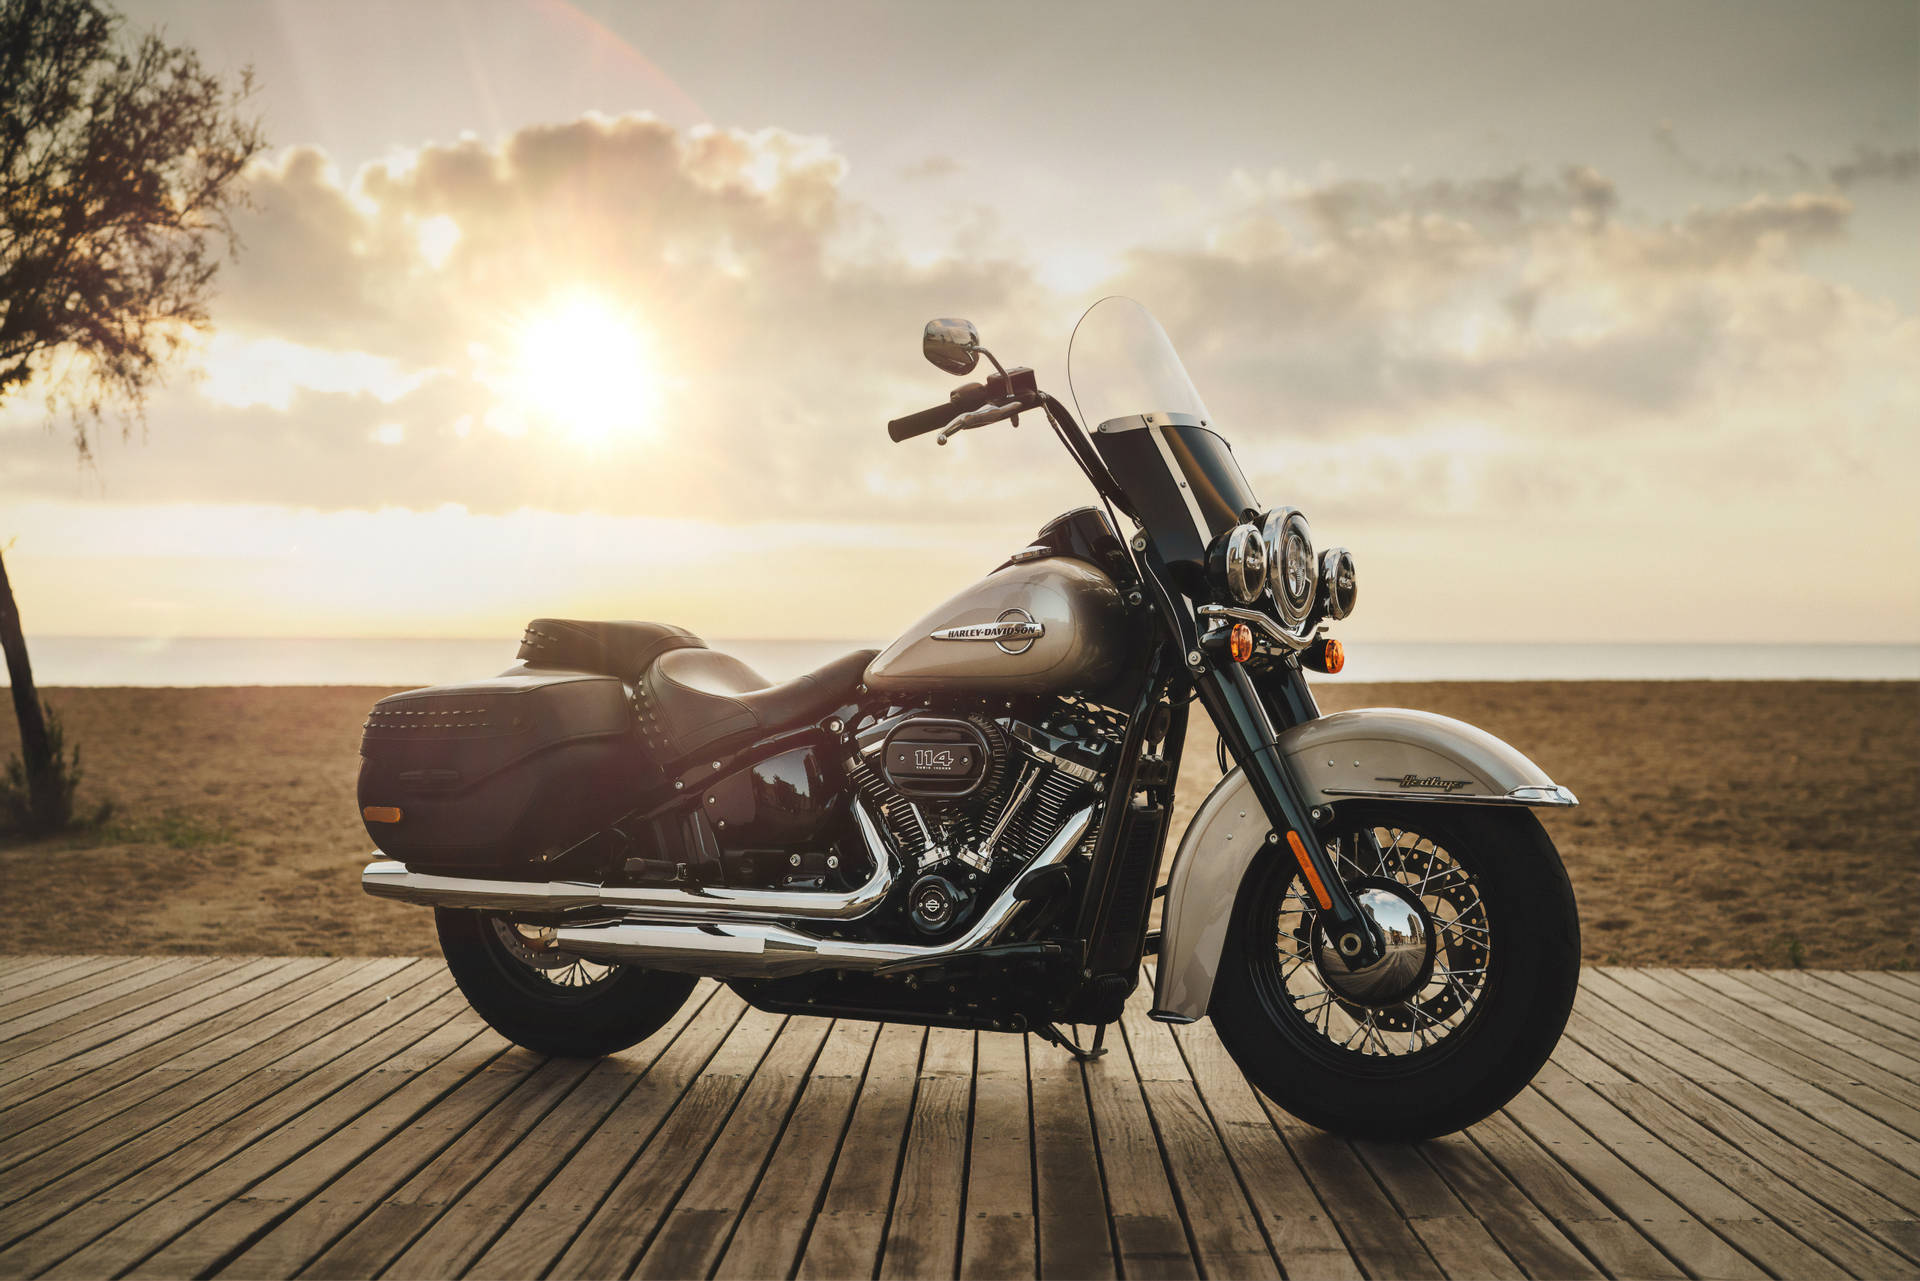 Harley Davidson During Sunset Wallpaper